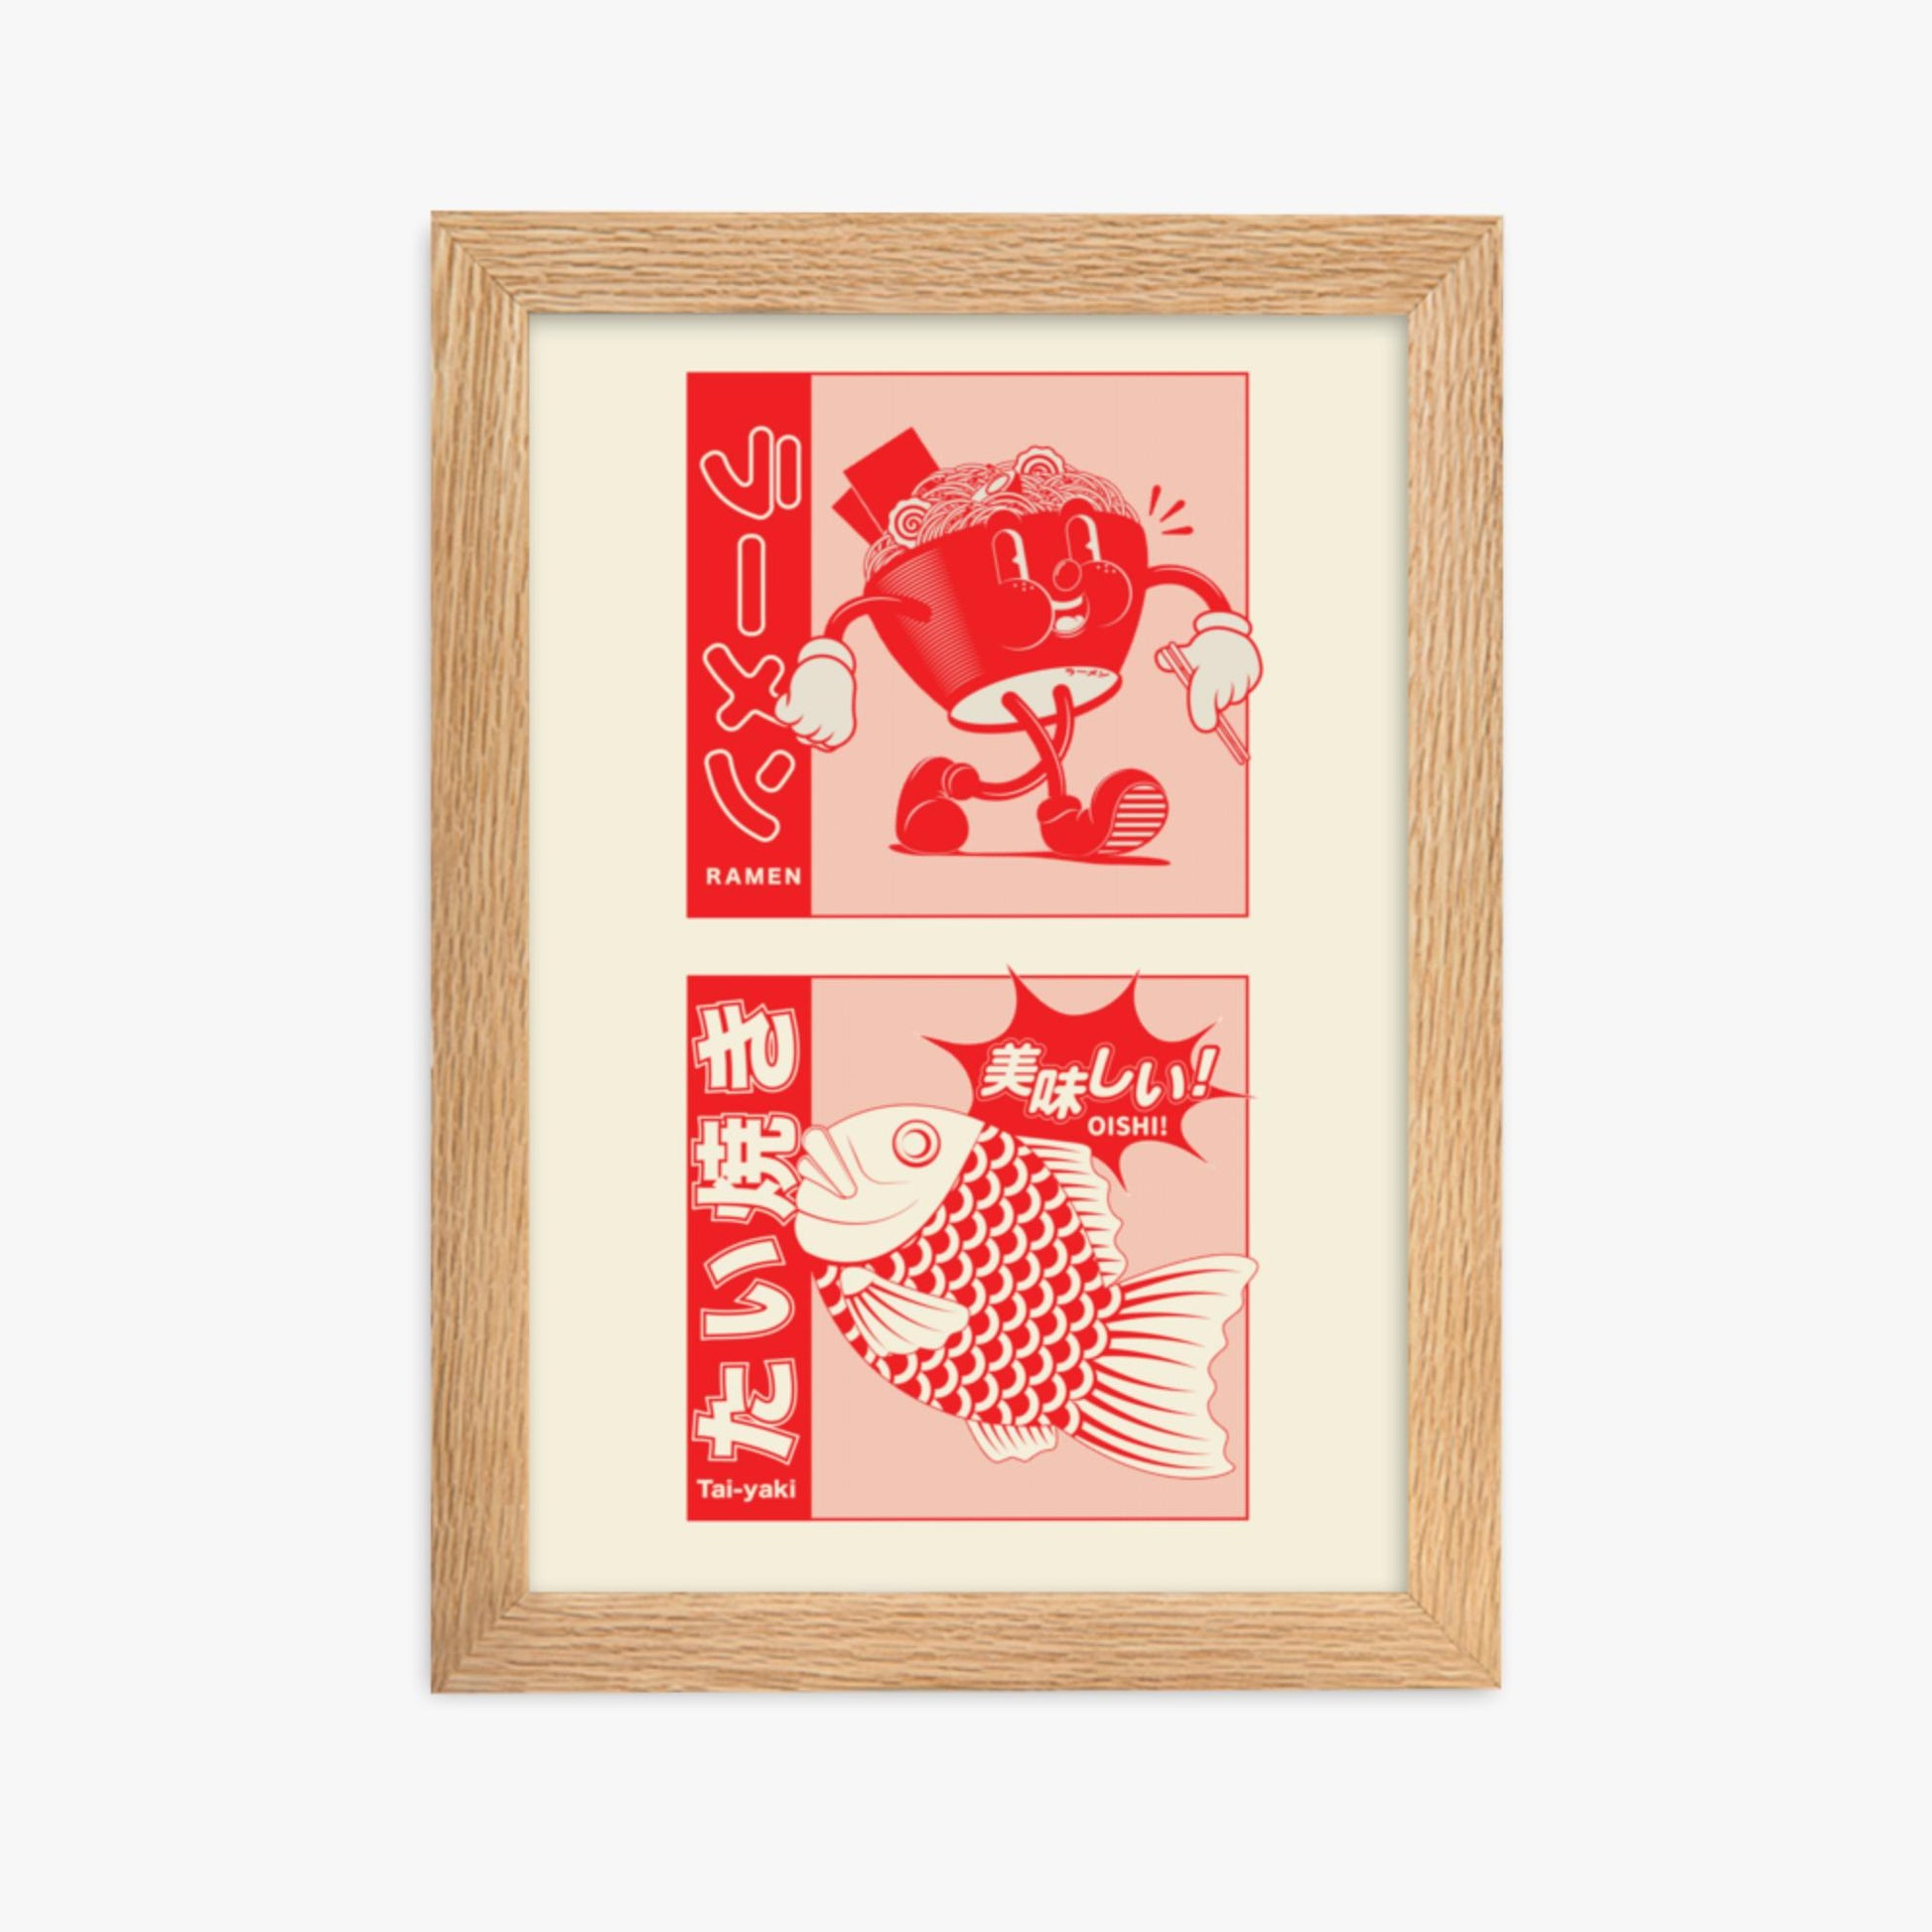 Modern illustration: Taiyaki & Ramen 21x30 cm Poster With Oak Frame Frame